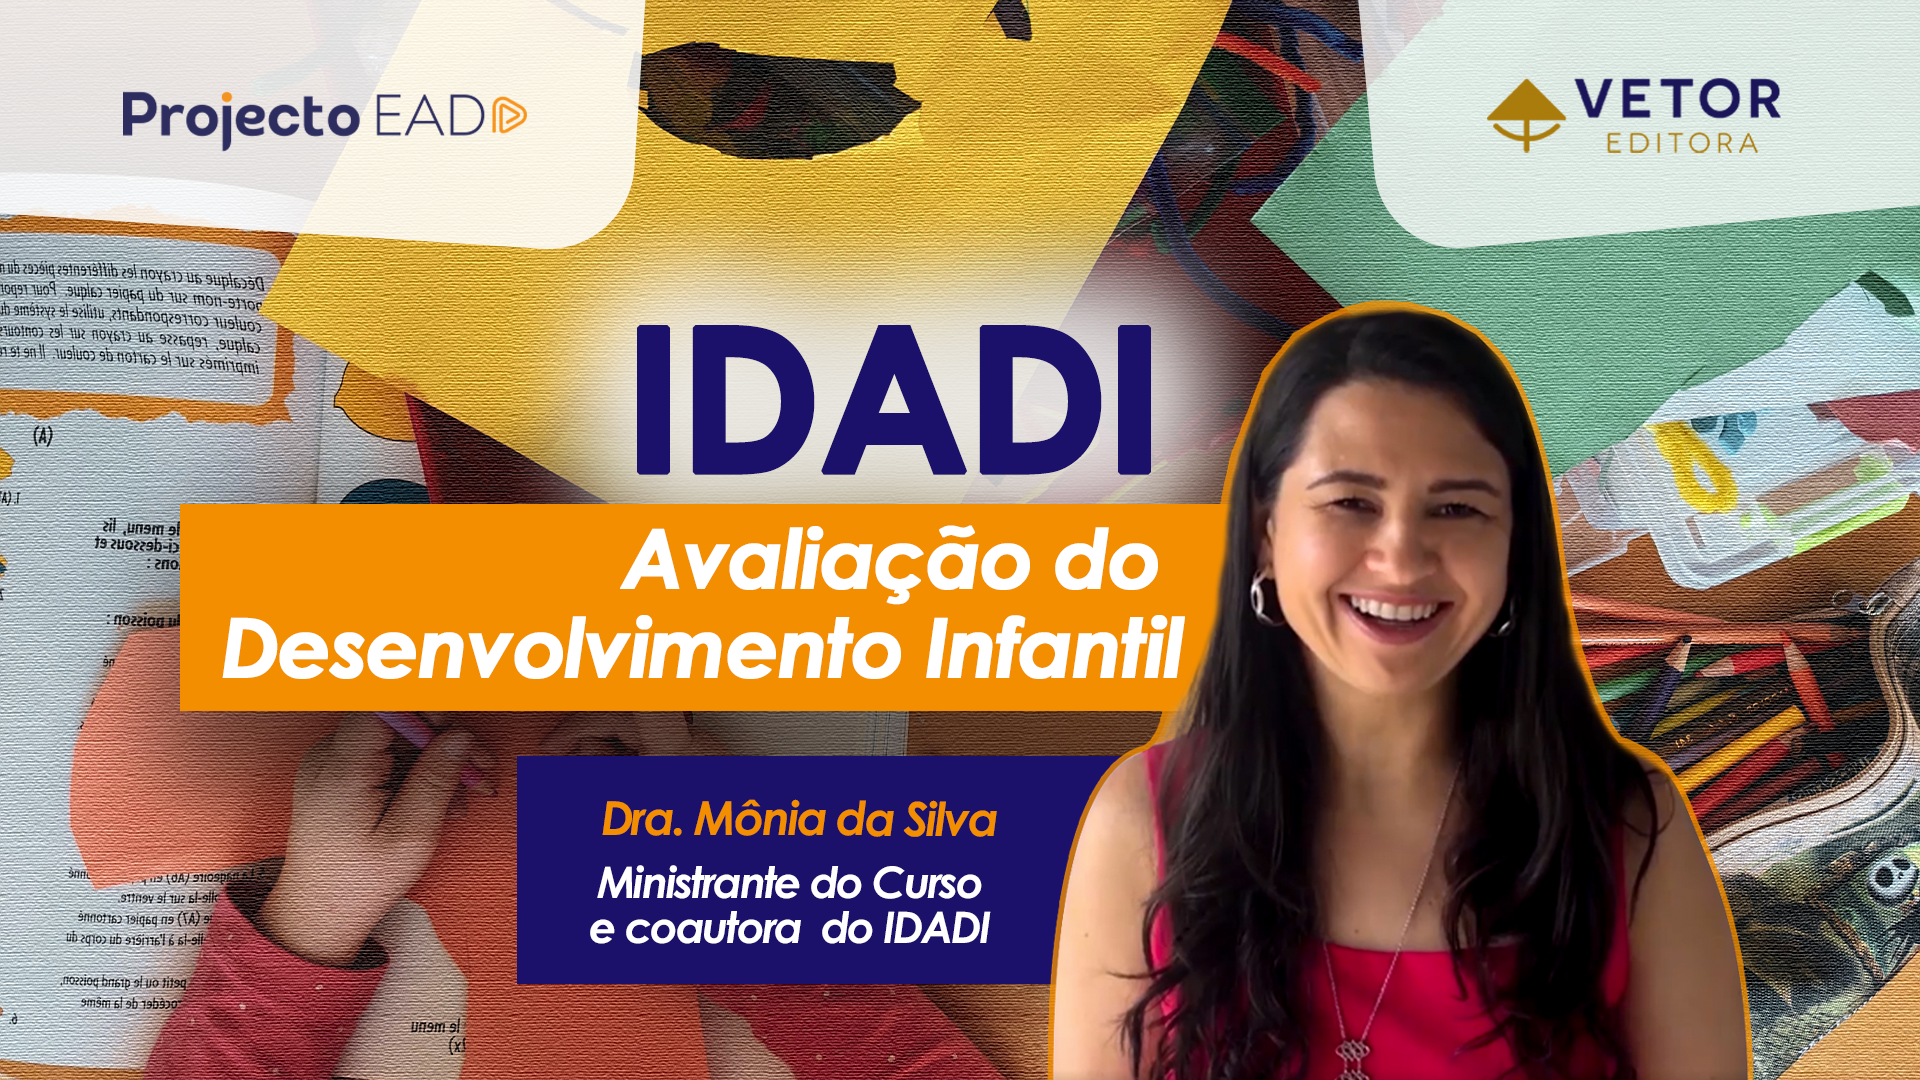 IDADI: Avaliação do Desenvolvimento Infantil